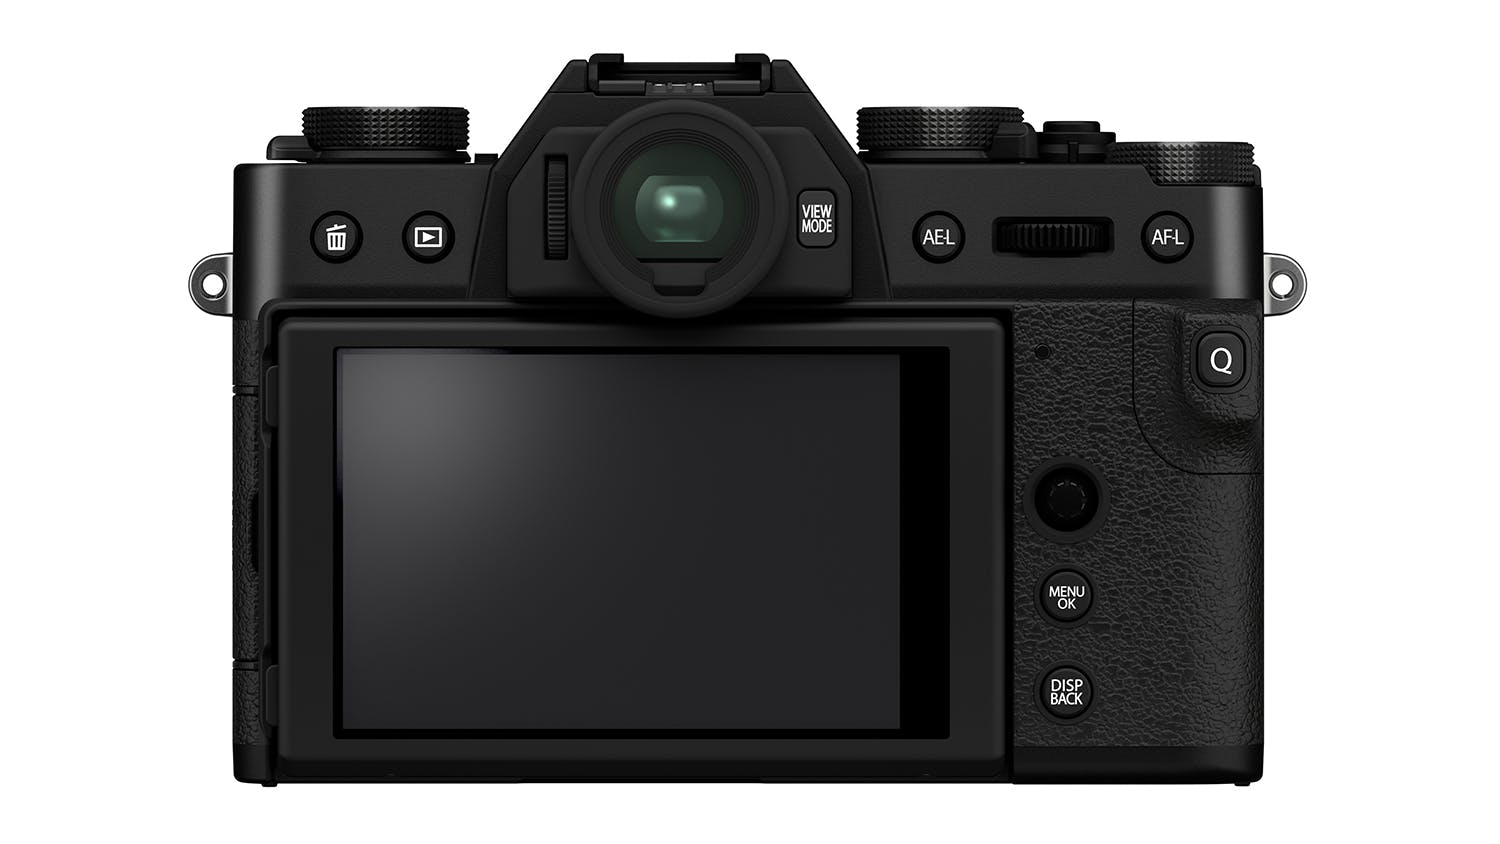 Fujifilm X-T30 II Mirrorless Camera with XC 15-45mm f/3.5-5.6 OIS PZ Lens - Black